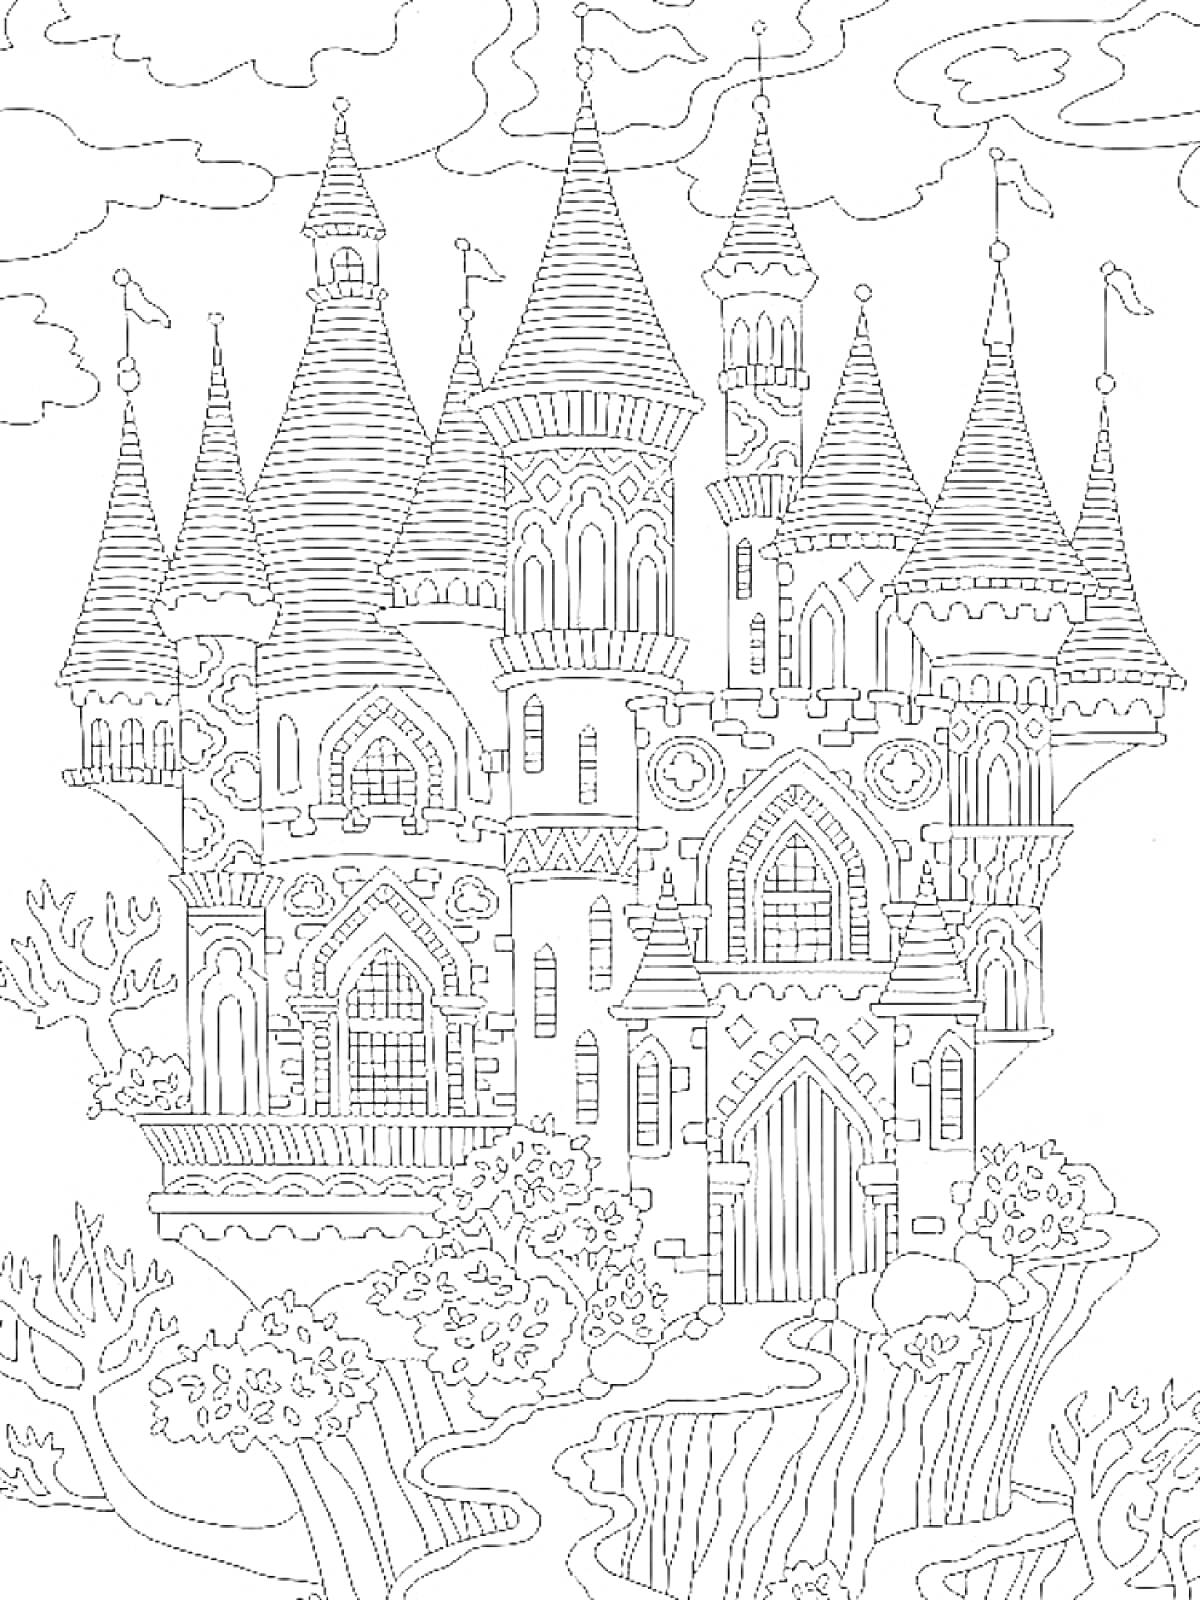 Раскраска Волшебный замок с башнями на фоне облаков и деревьями спереди